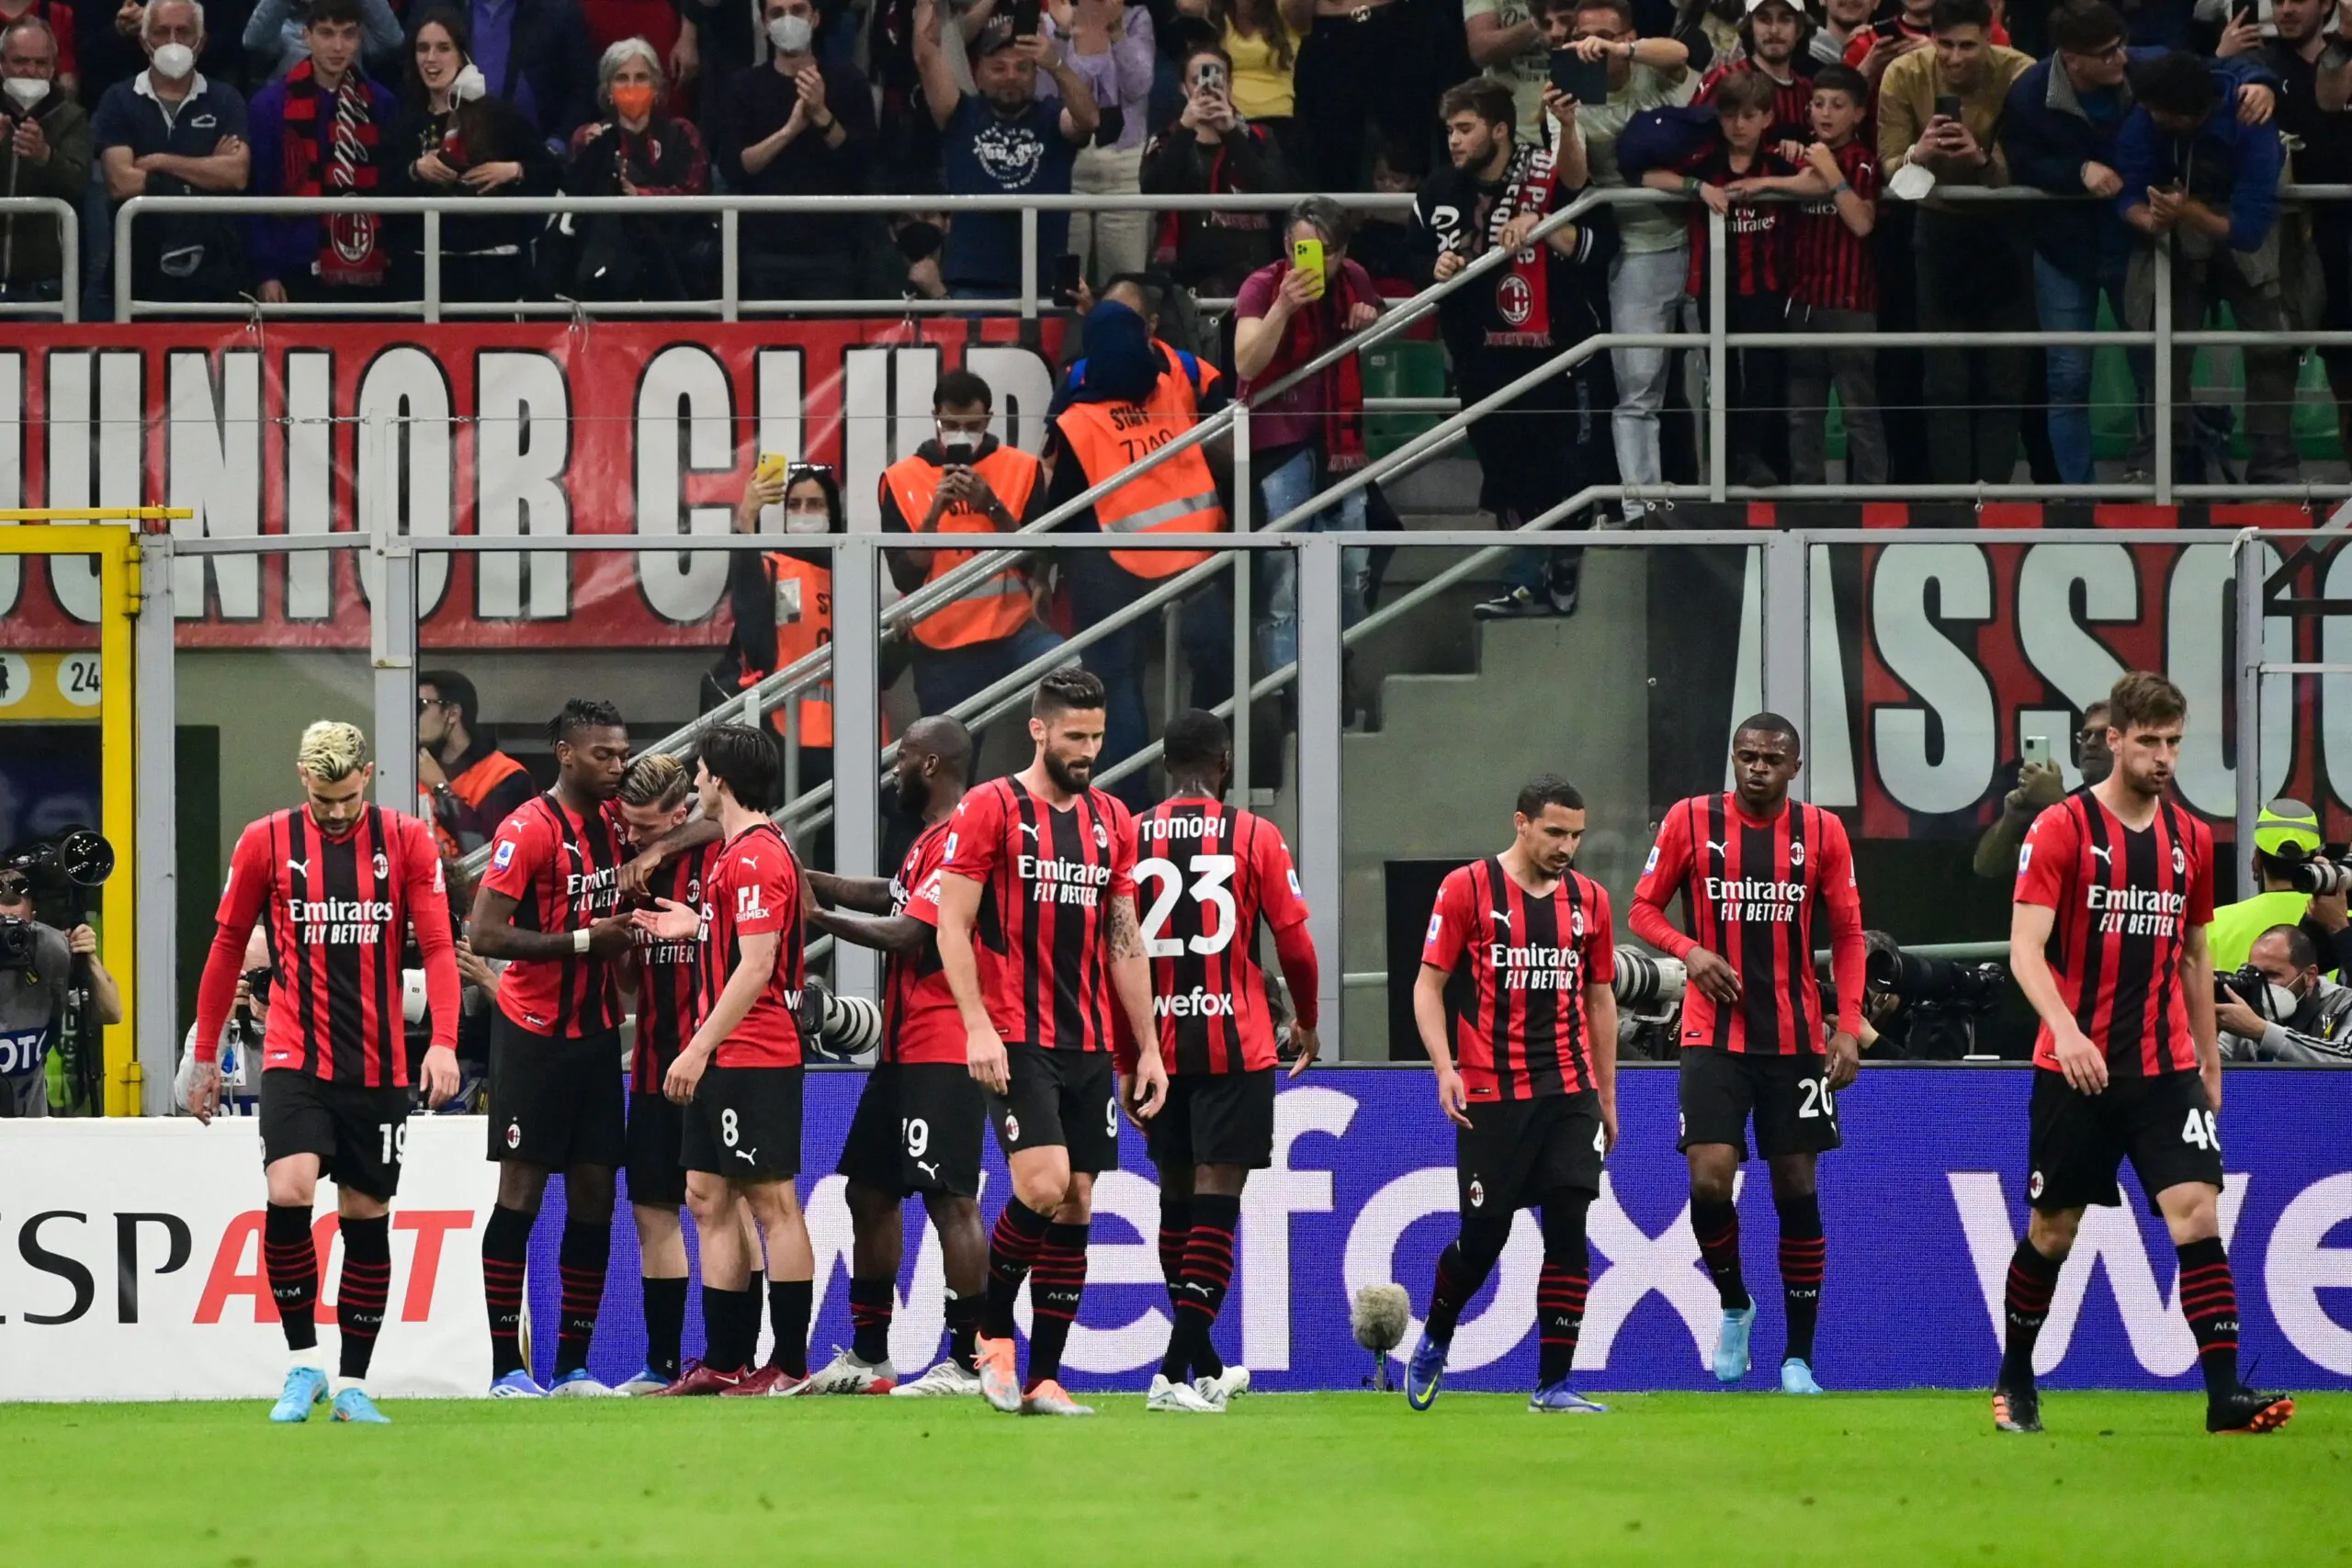 Indiscrezione sul Milan, come sarà la nuova maglia rossonera (FOTO)